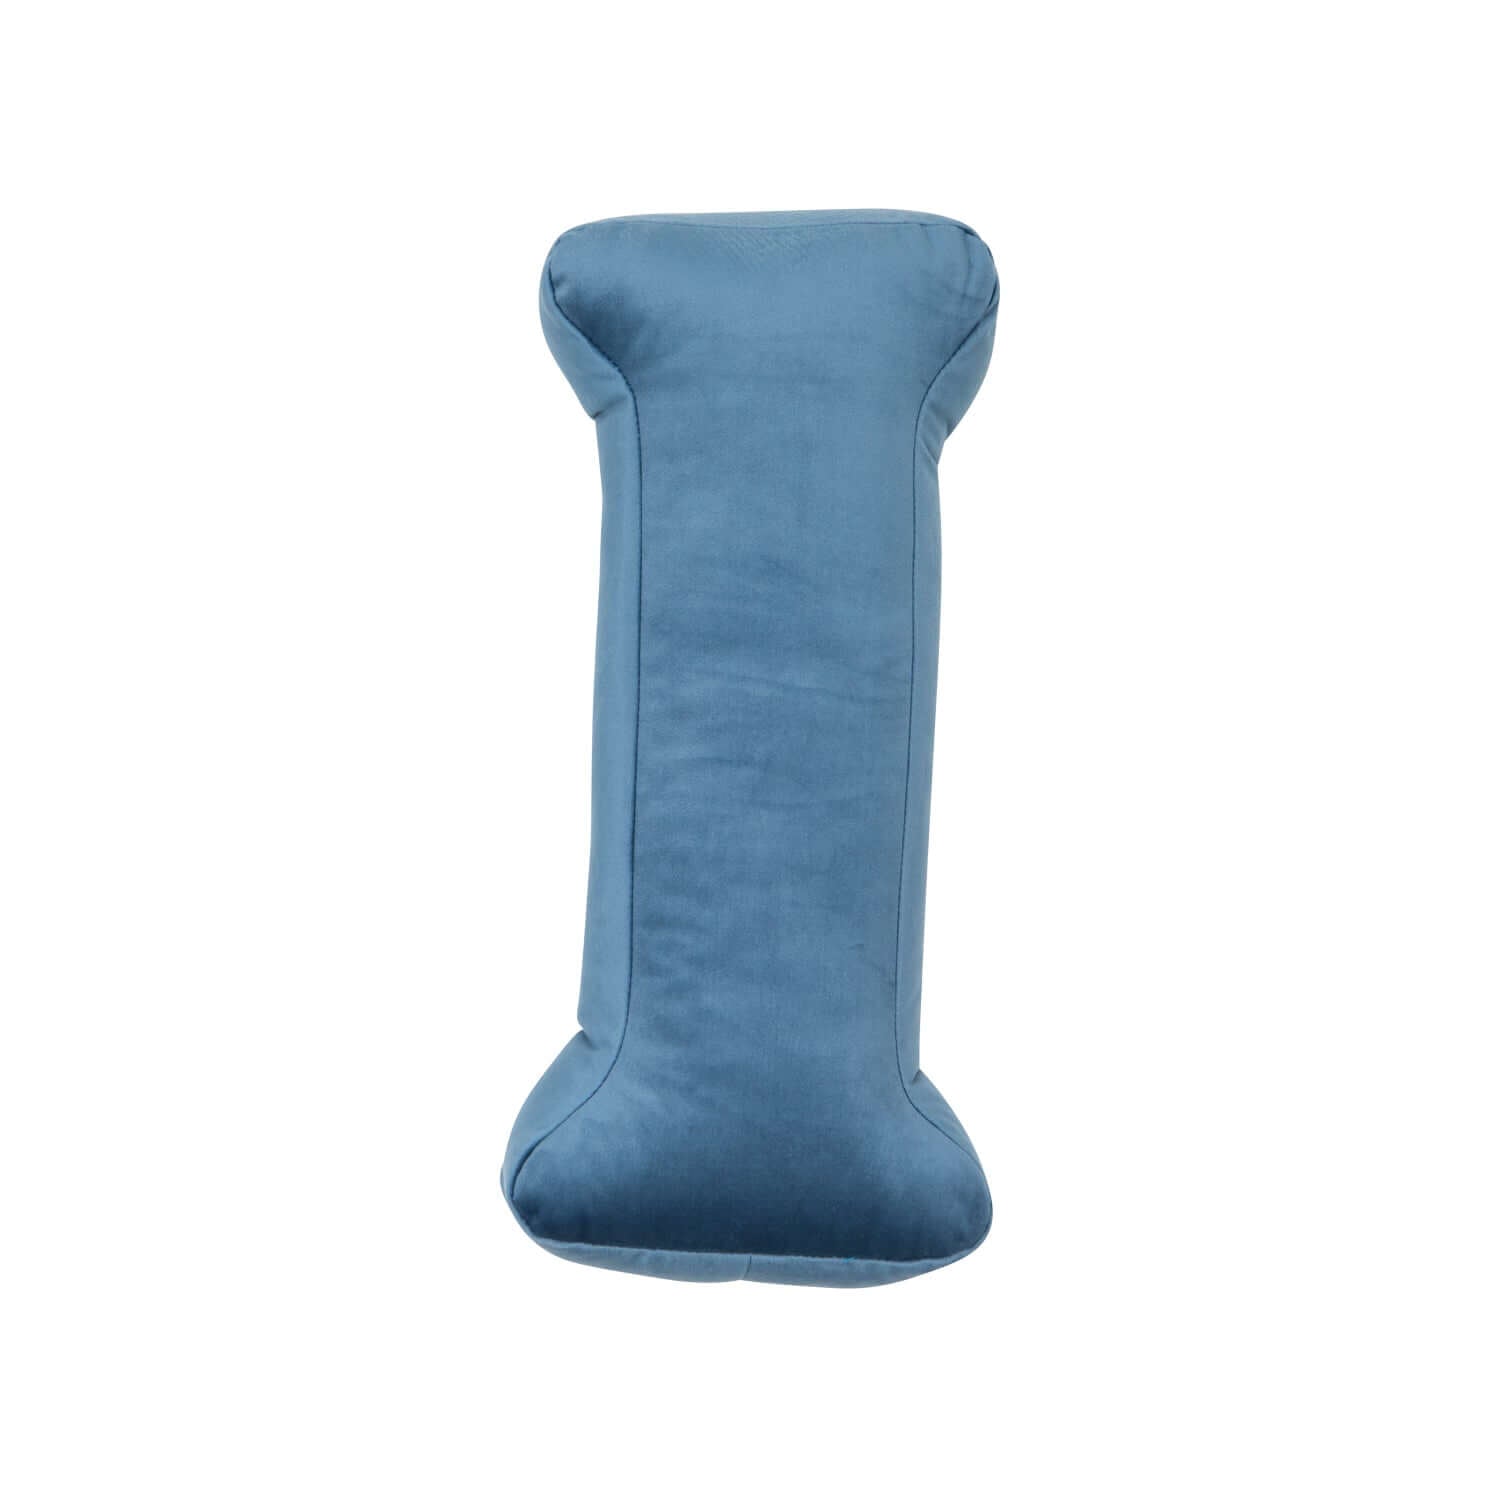 velvet letter cushion i blue by bettys home 